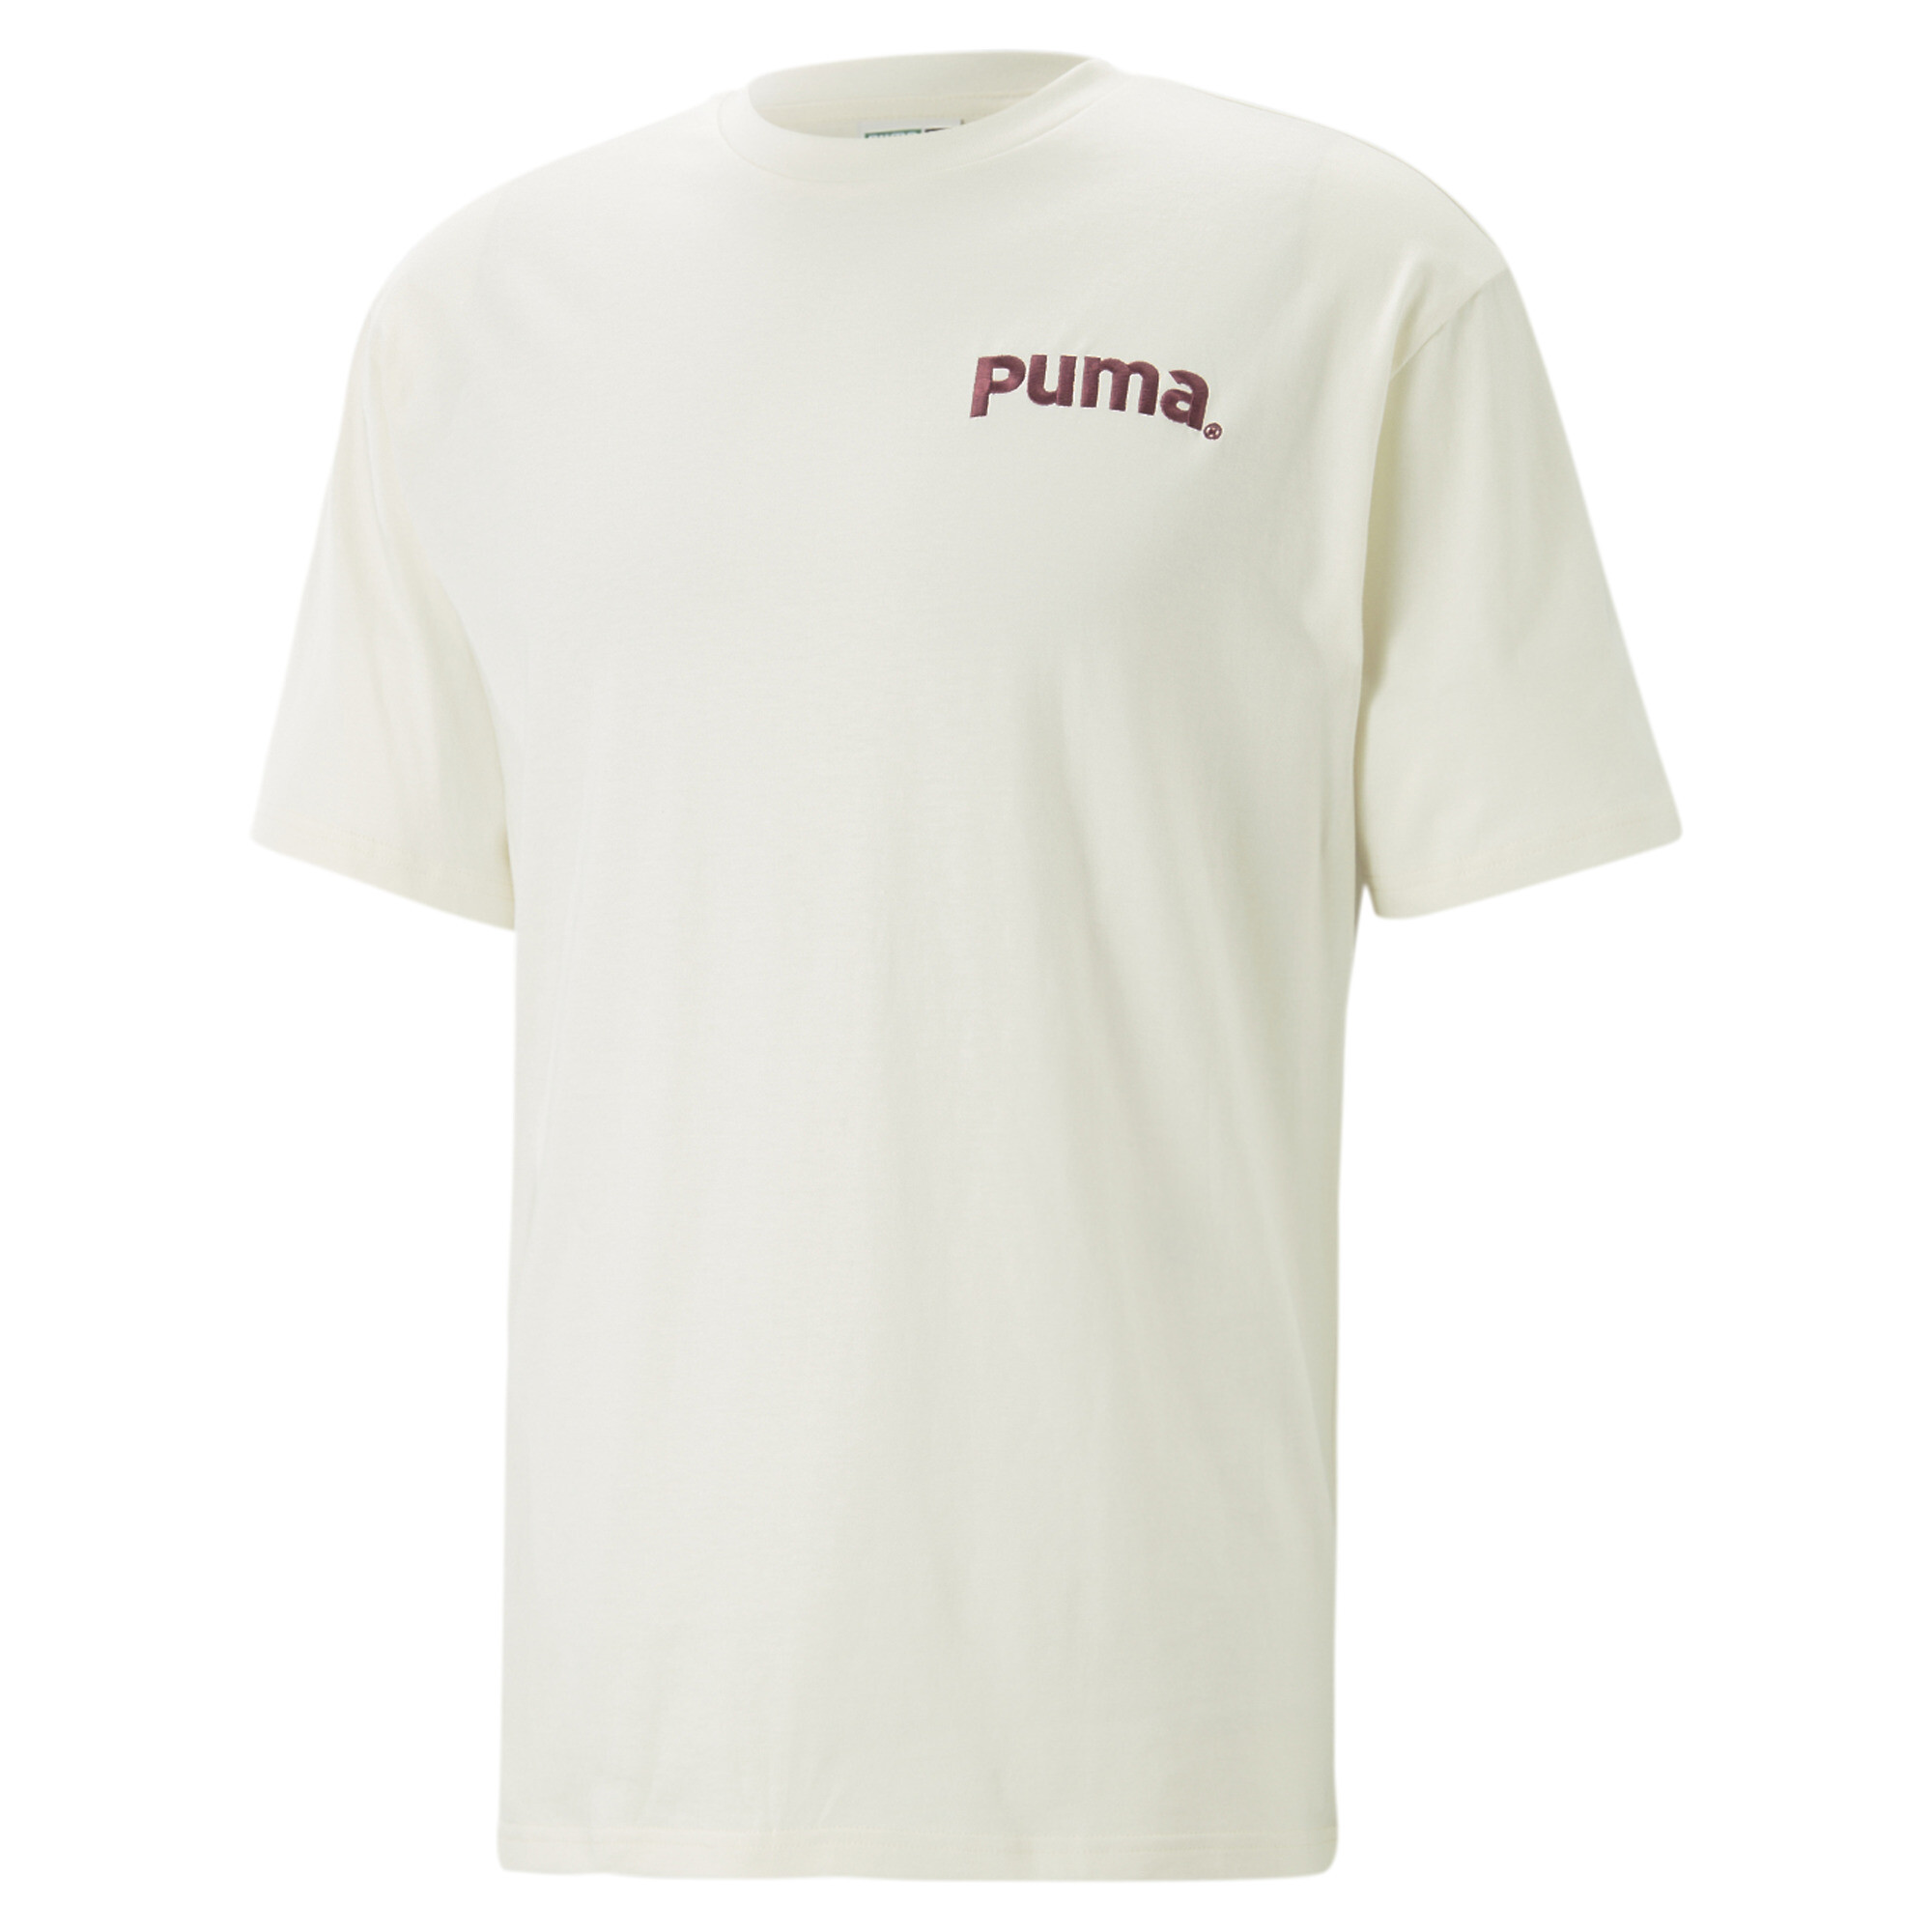 ＜プーマ公式通販＞ プーマ ユニセックス PUMA x BFGU Graphic Project グラフィック 長袖 Tシャツ ユニセックス Puma Black ｜PUMA.com